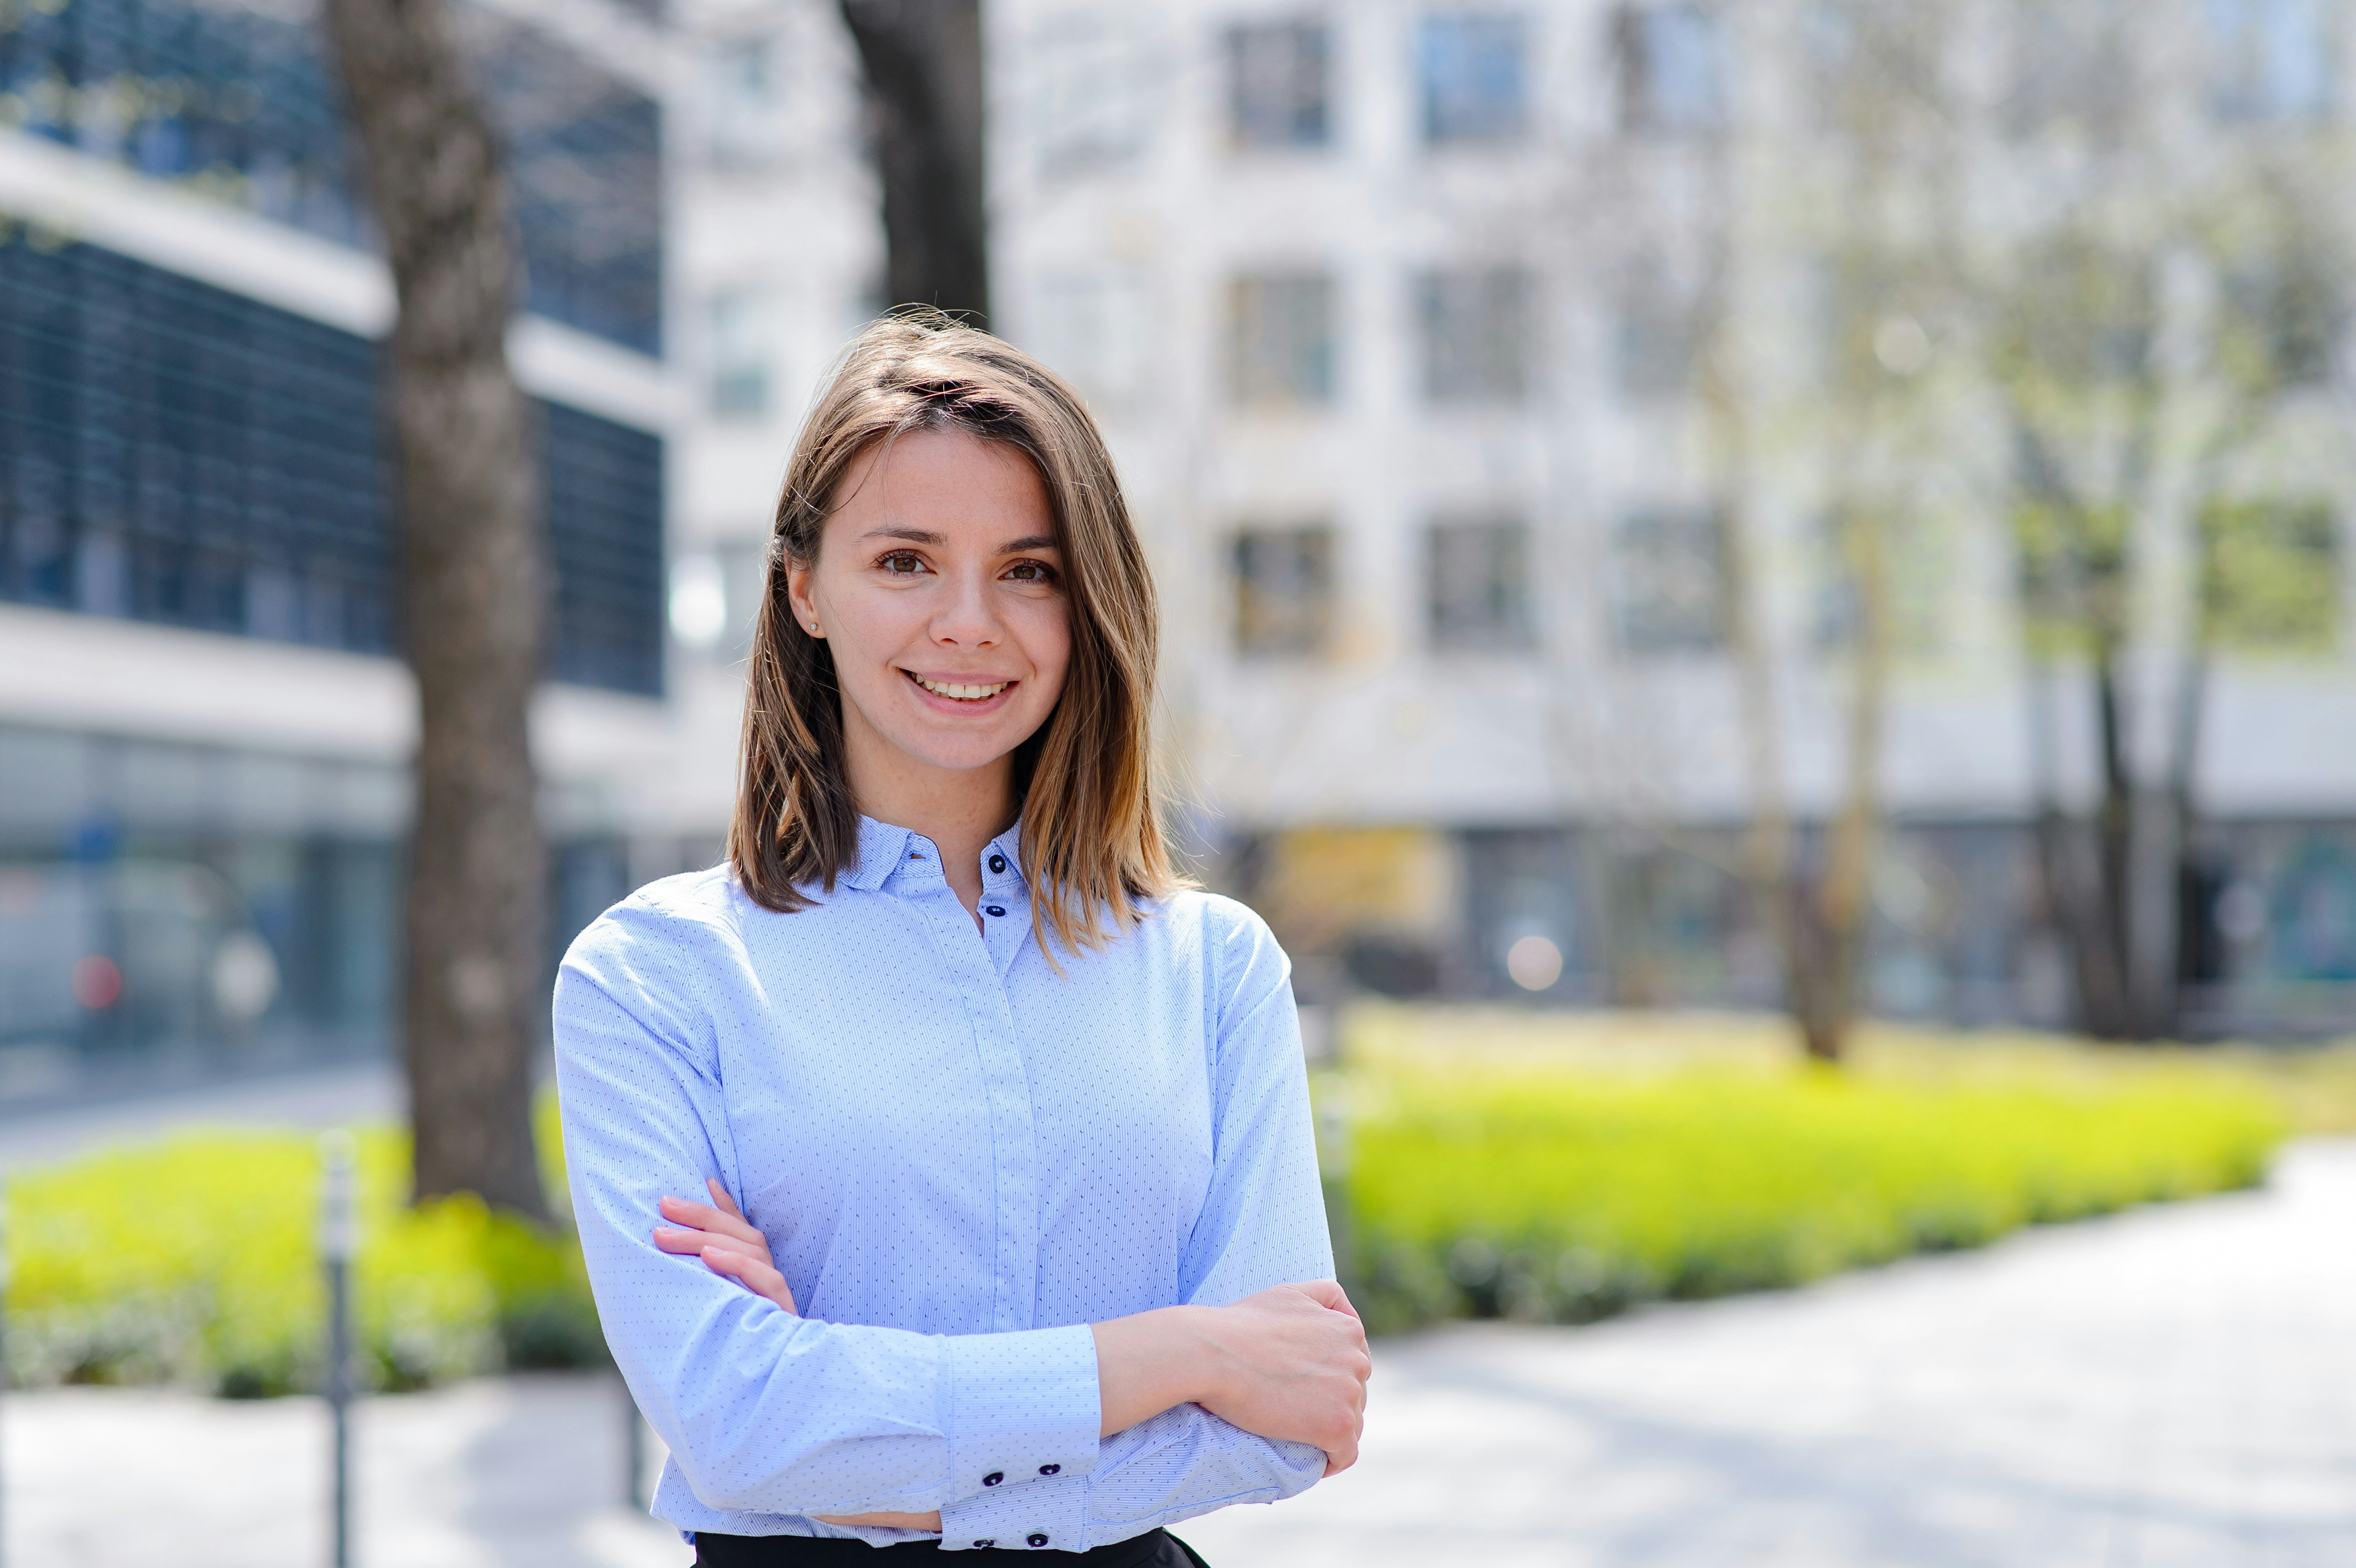 Profilfoto von Zoia Bylinovich in hellblauem Hemd und mit verschränkten Armen.